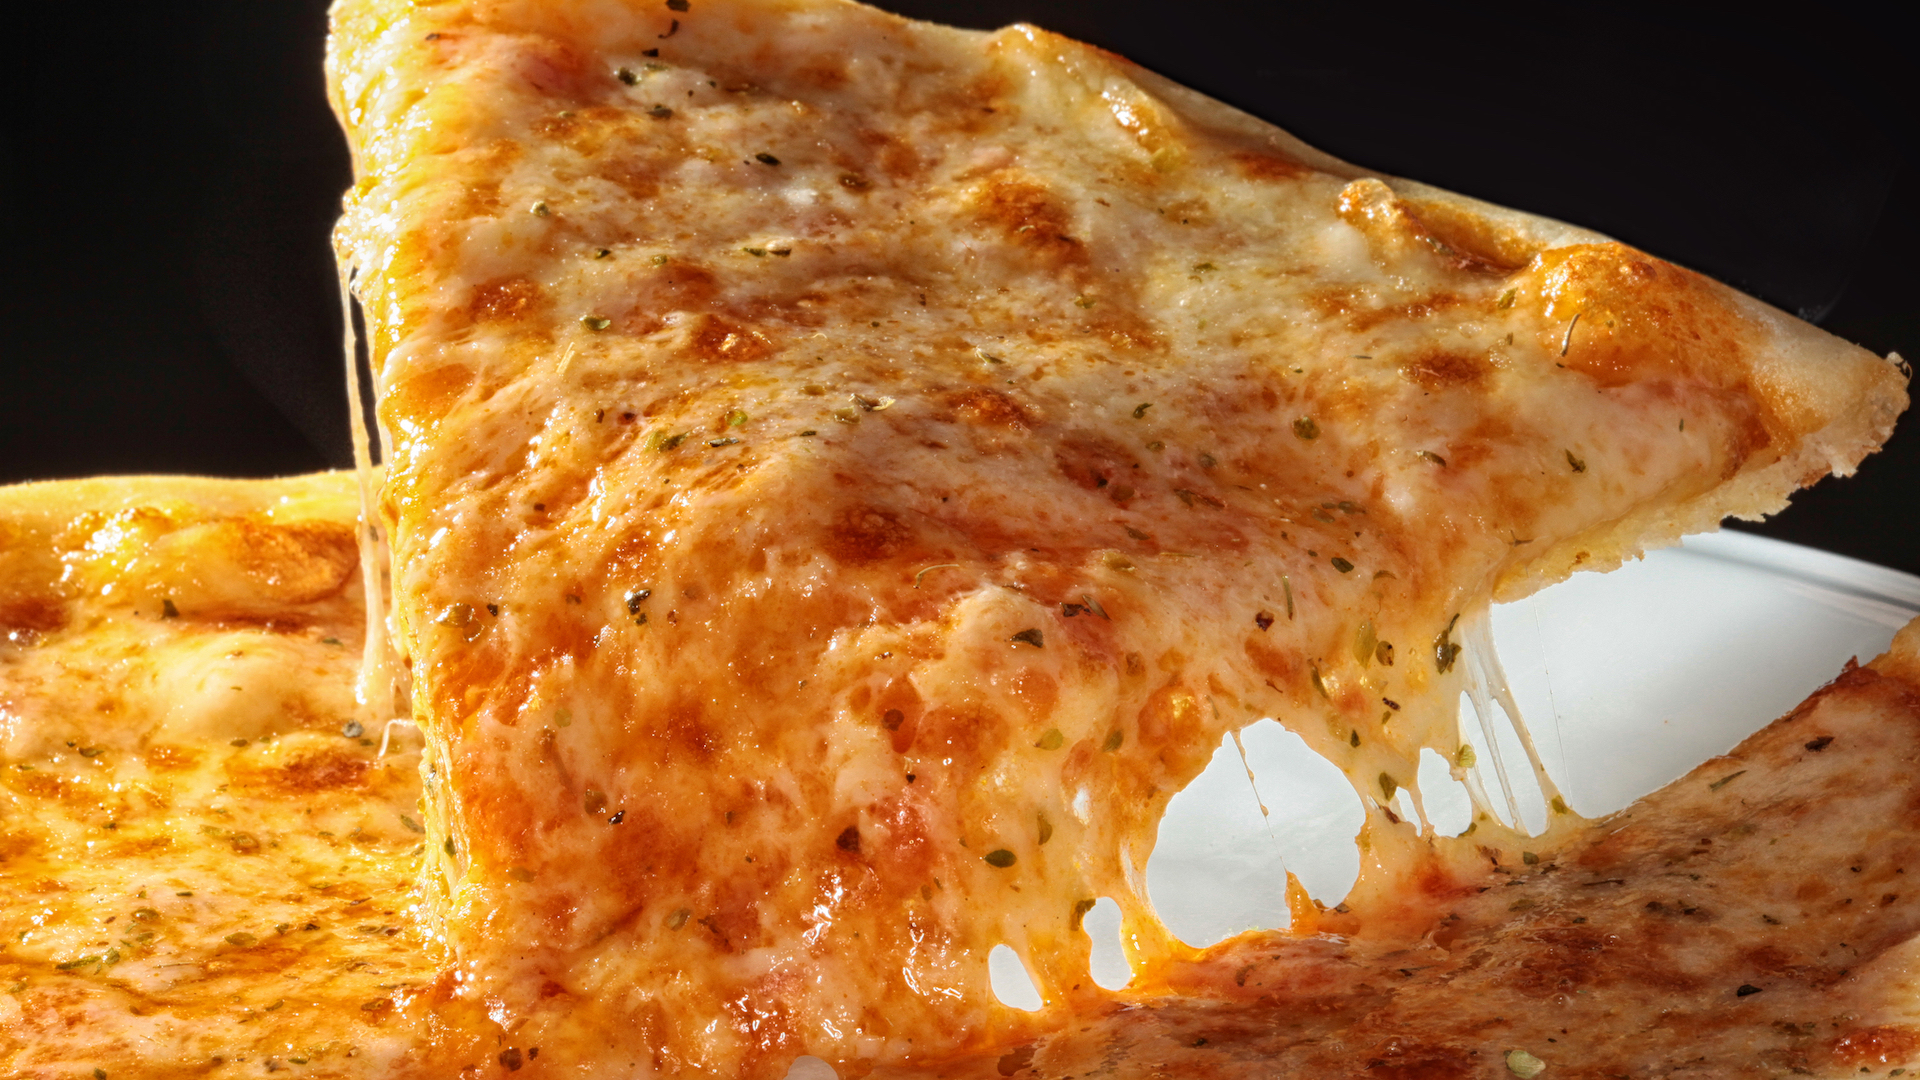 A very cheesy pizza